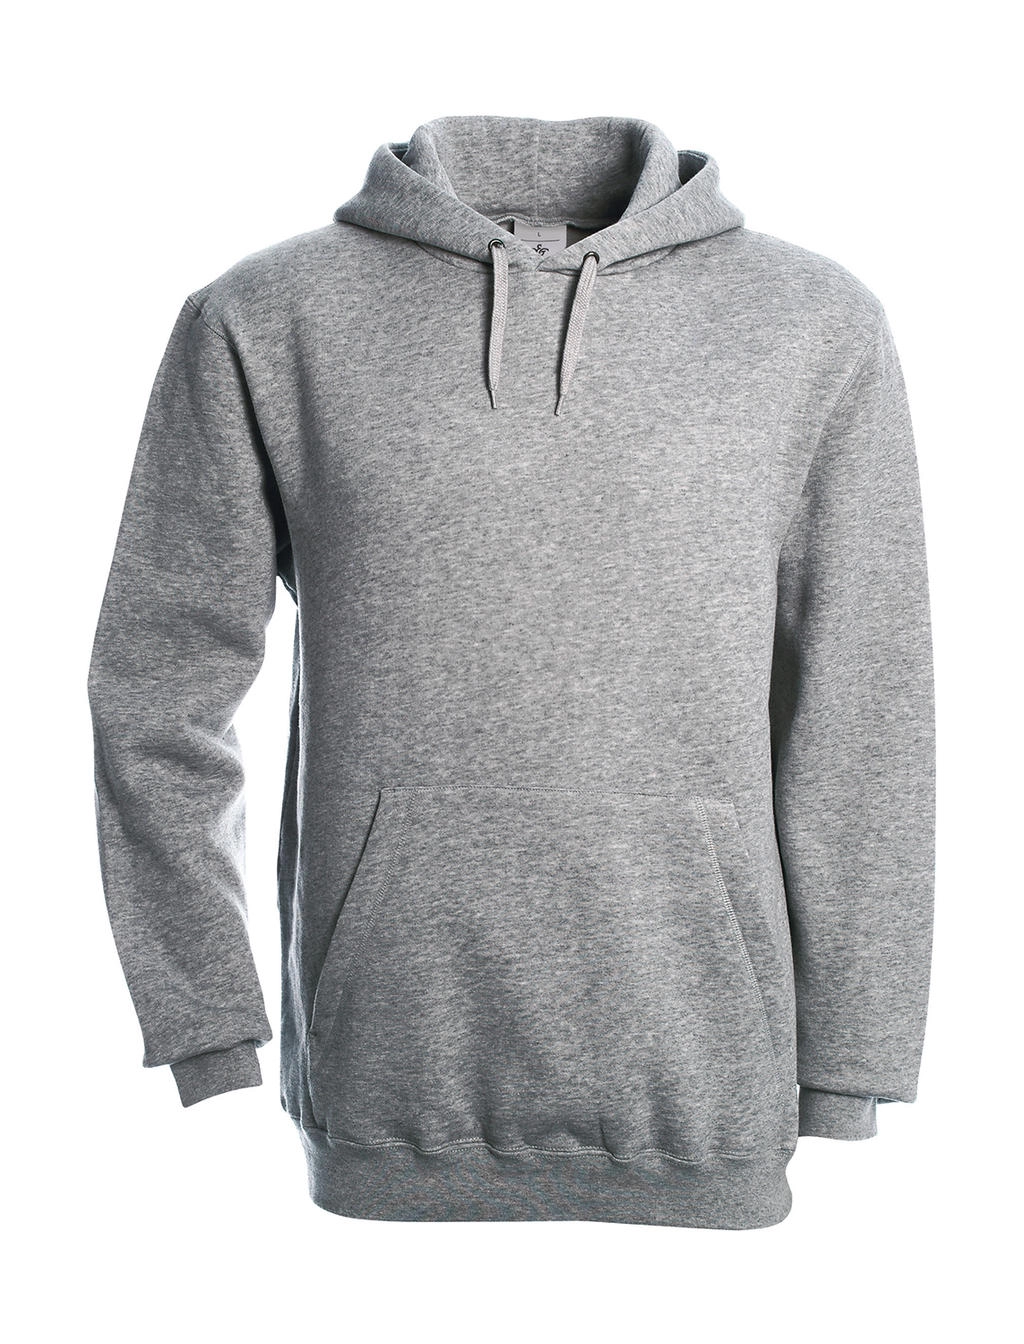 Hooded Sweatshirt zum Besticken und Bedrucken in der Farbe Heather Grey mit Ihren Logo, Schriftzug oder Motiv.